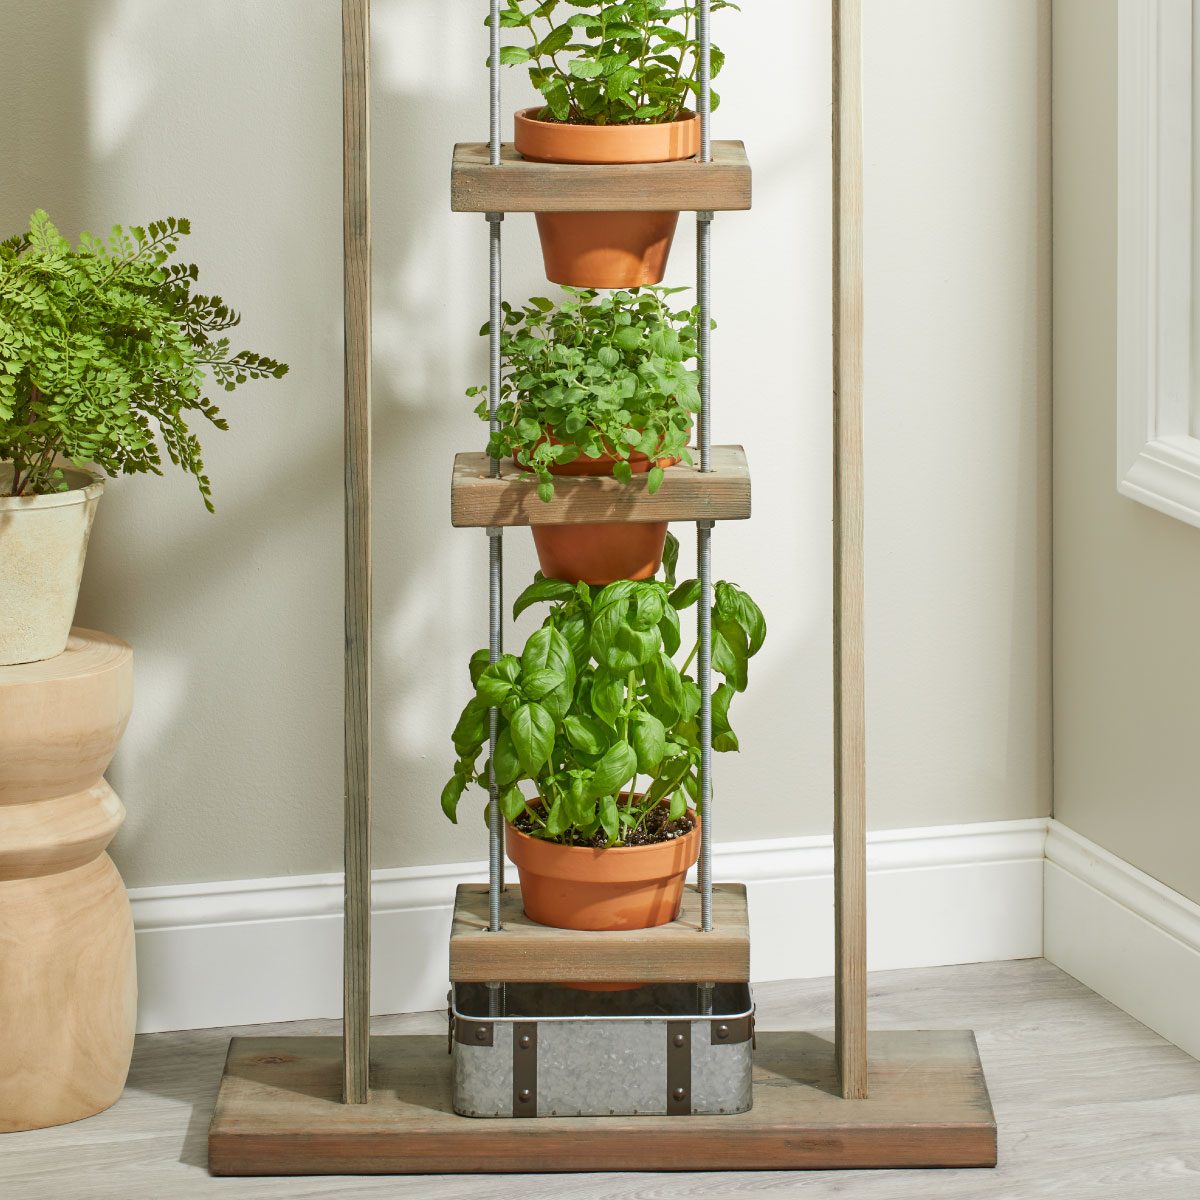 How to Make a DIY Indoor Herb Garden